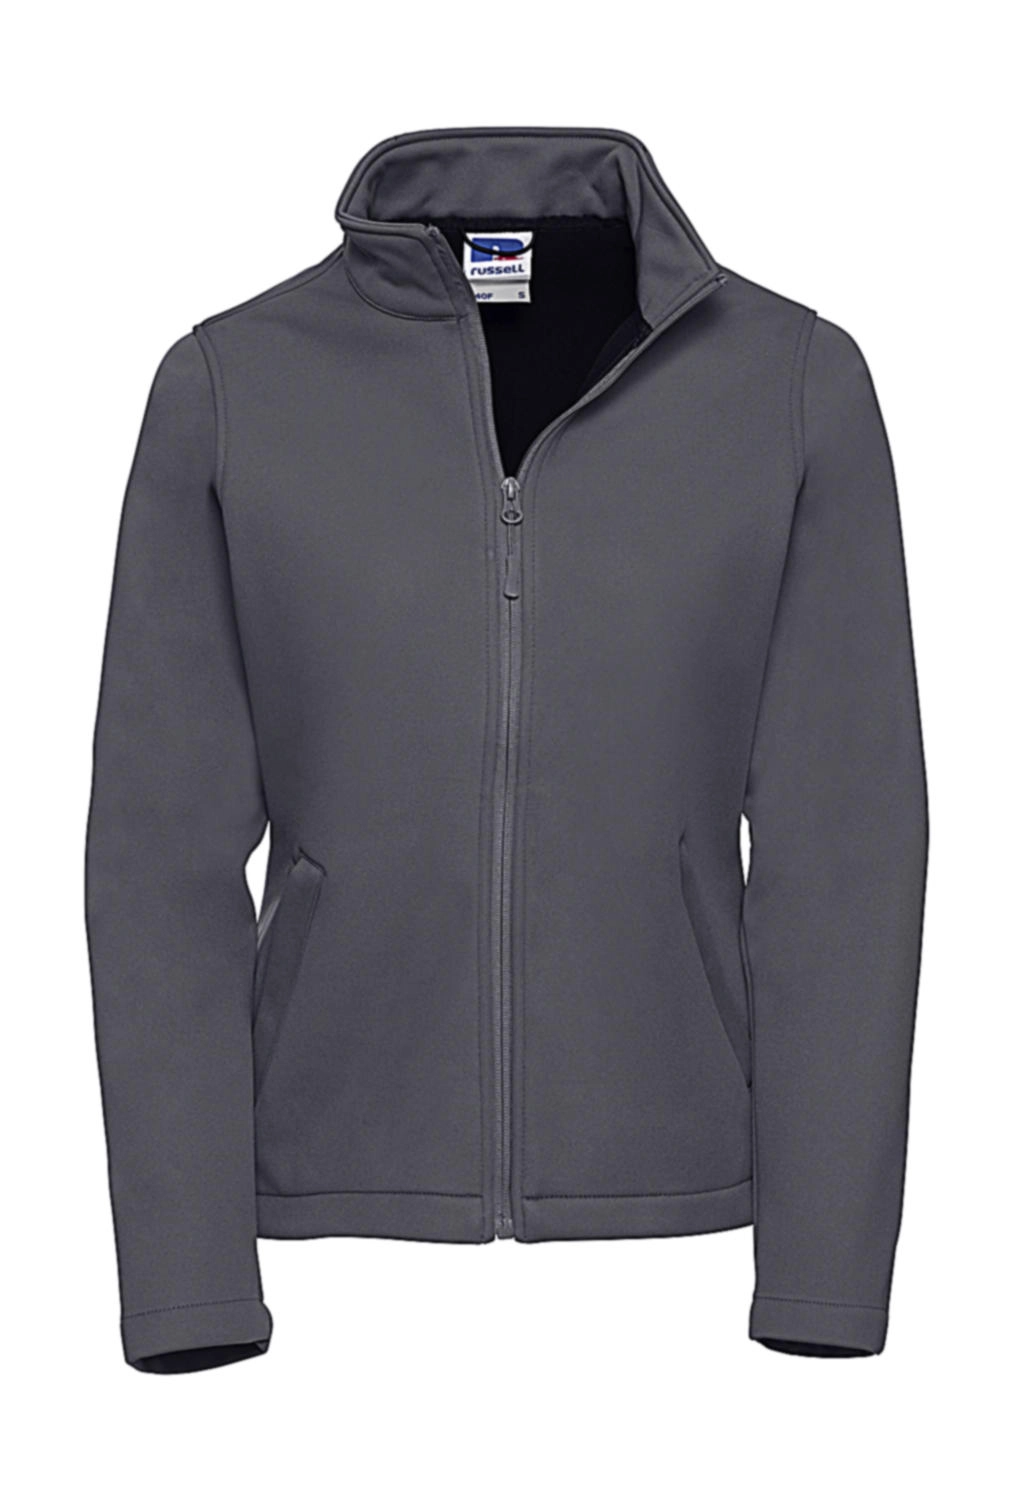 Ladies` Smart Softshell Jacket zum Besticken und Bedrucken in der Farbe Convoy Grey mit Ihren Logo, Schriftzug oder Motiv.